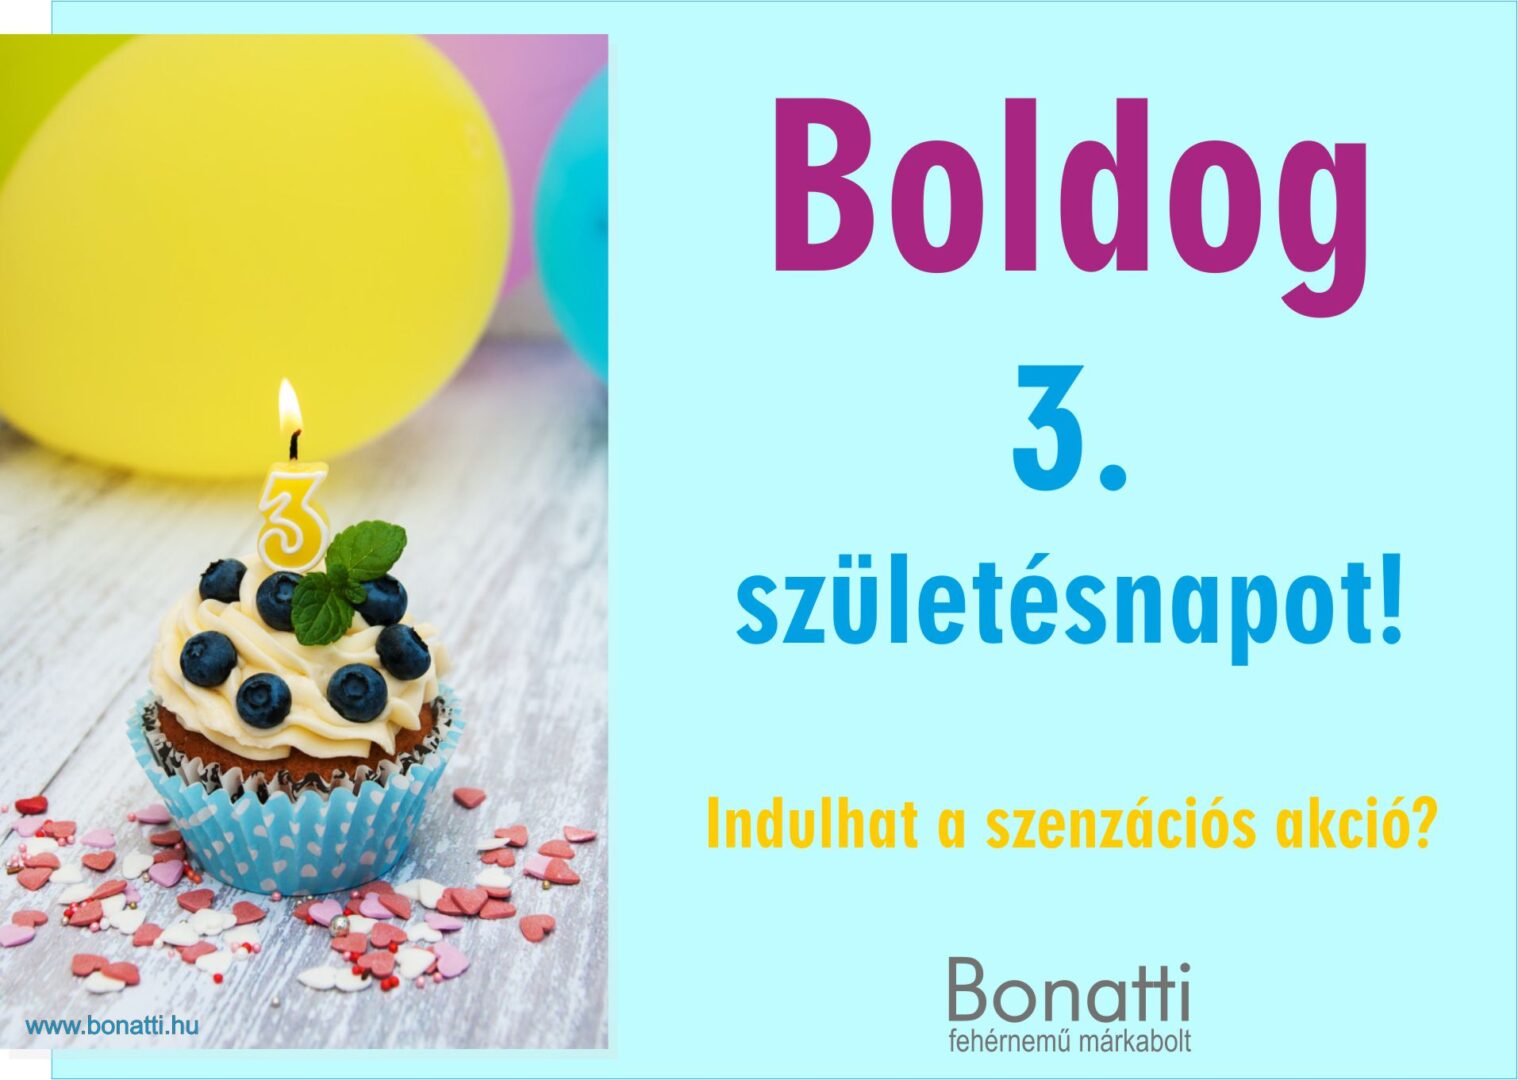 A Bonatti 3. születésnapja akciókkal